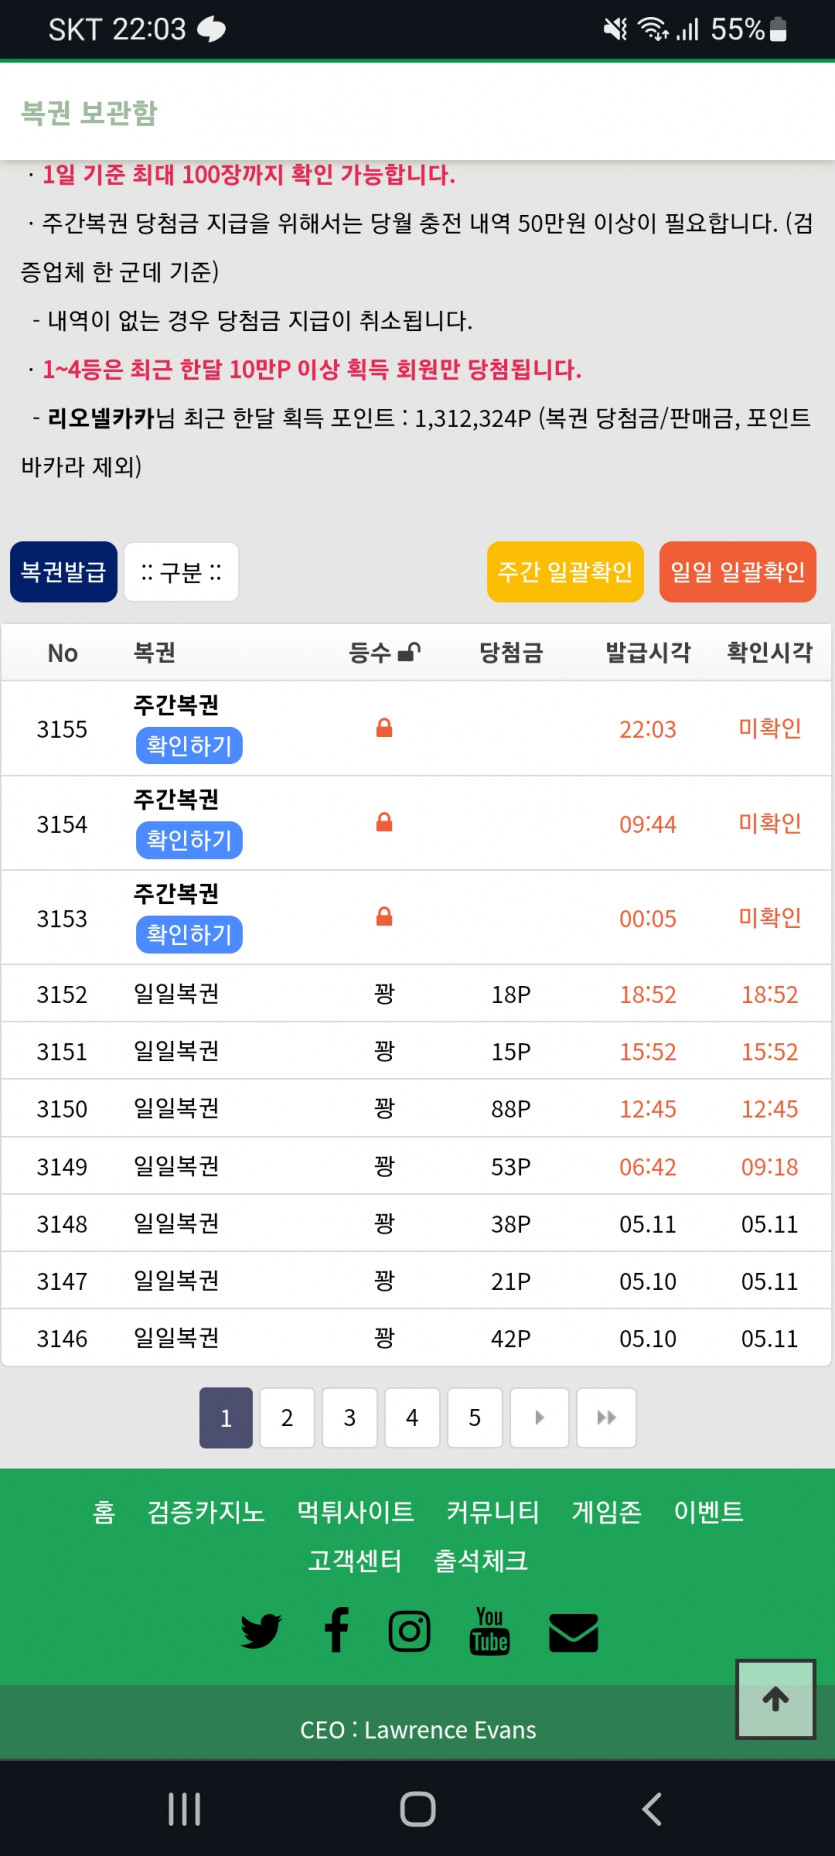 앙기무띠 ㅋㅋ 오늘하루주복3장 ㅋㅋ 담주예약요^^7(0)